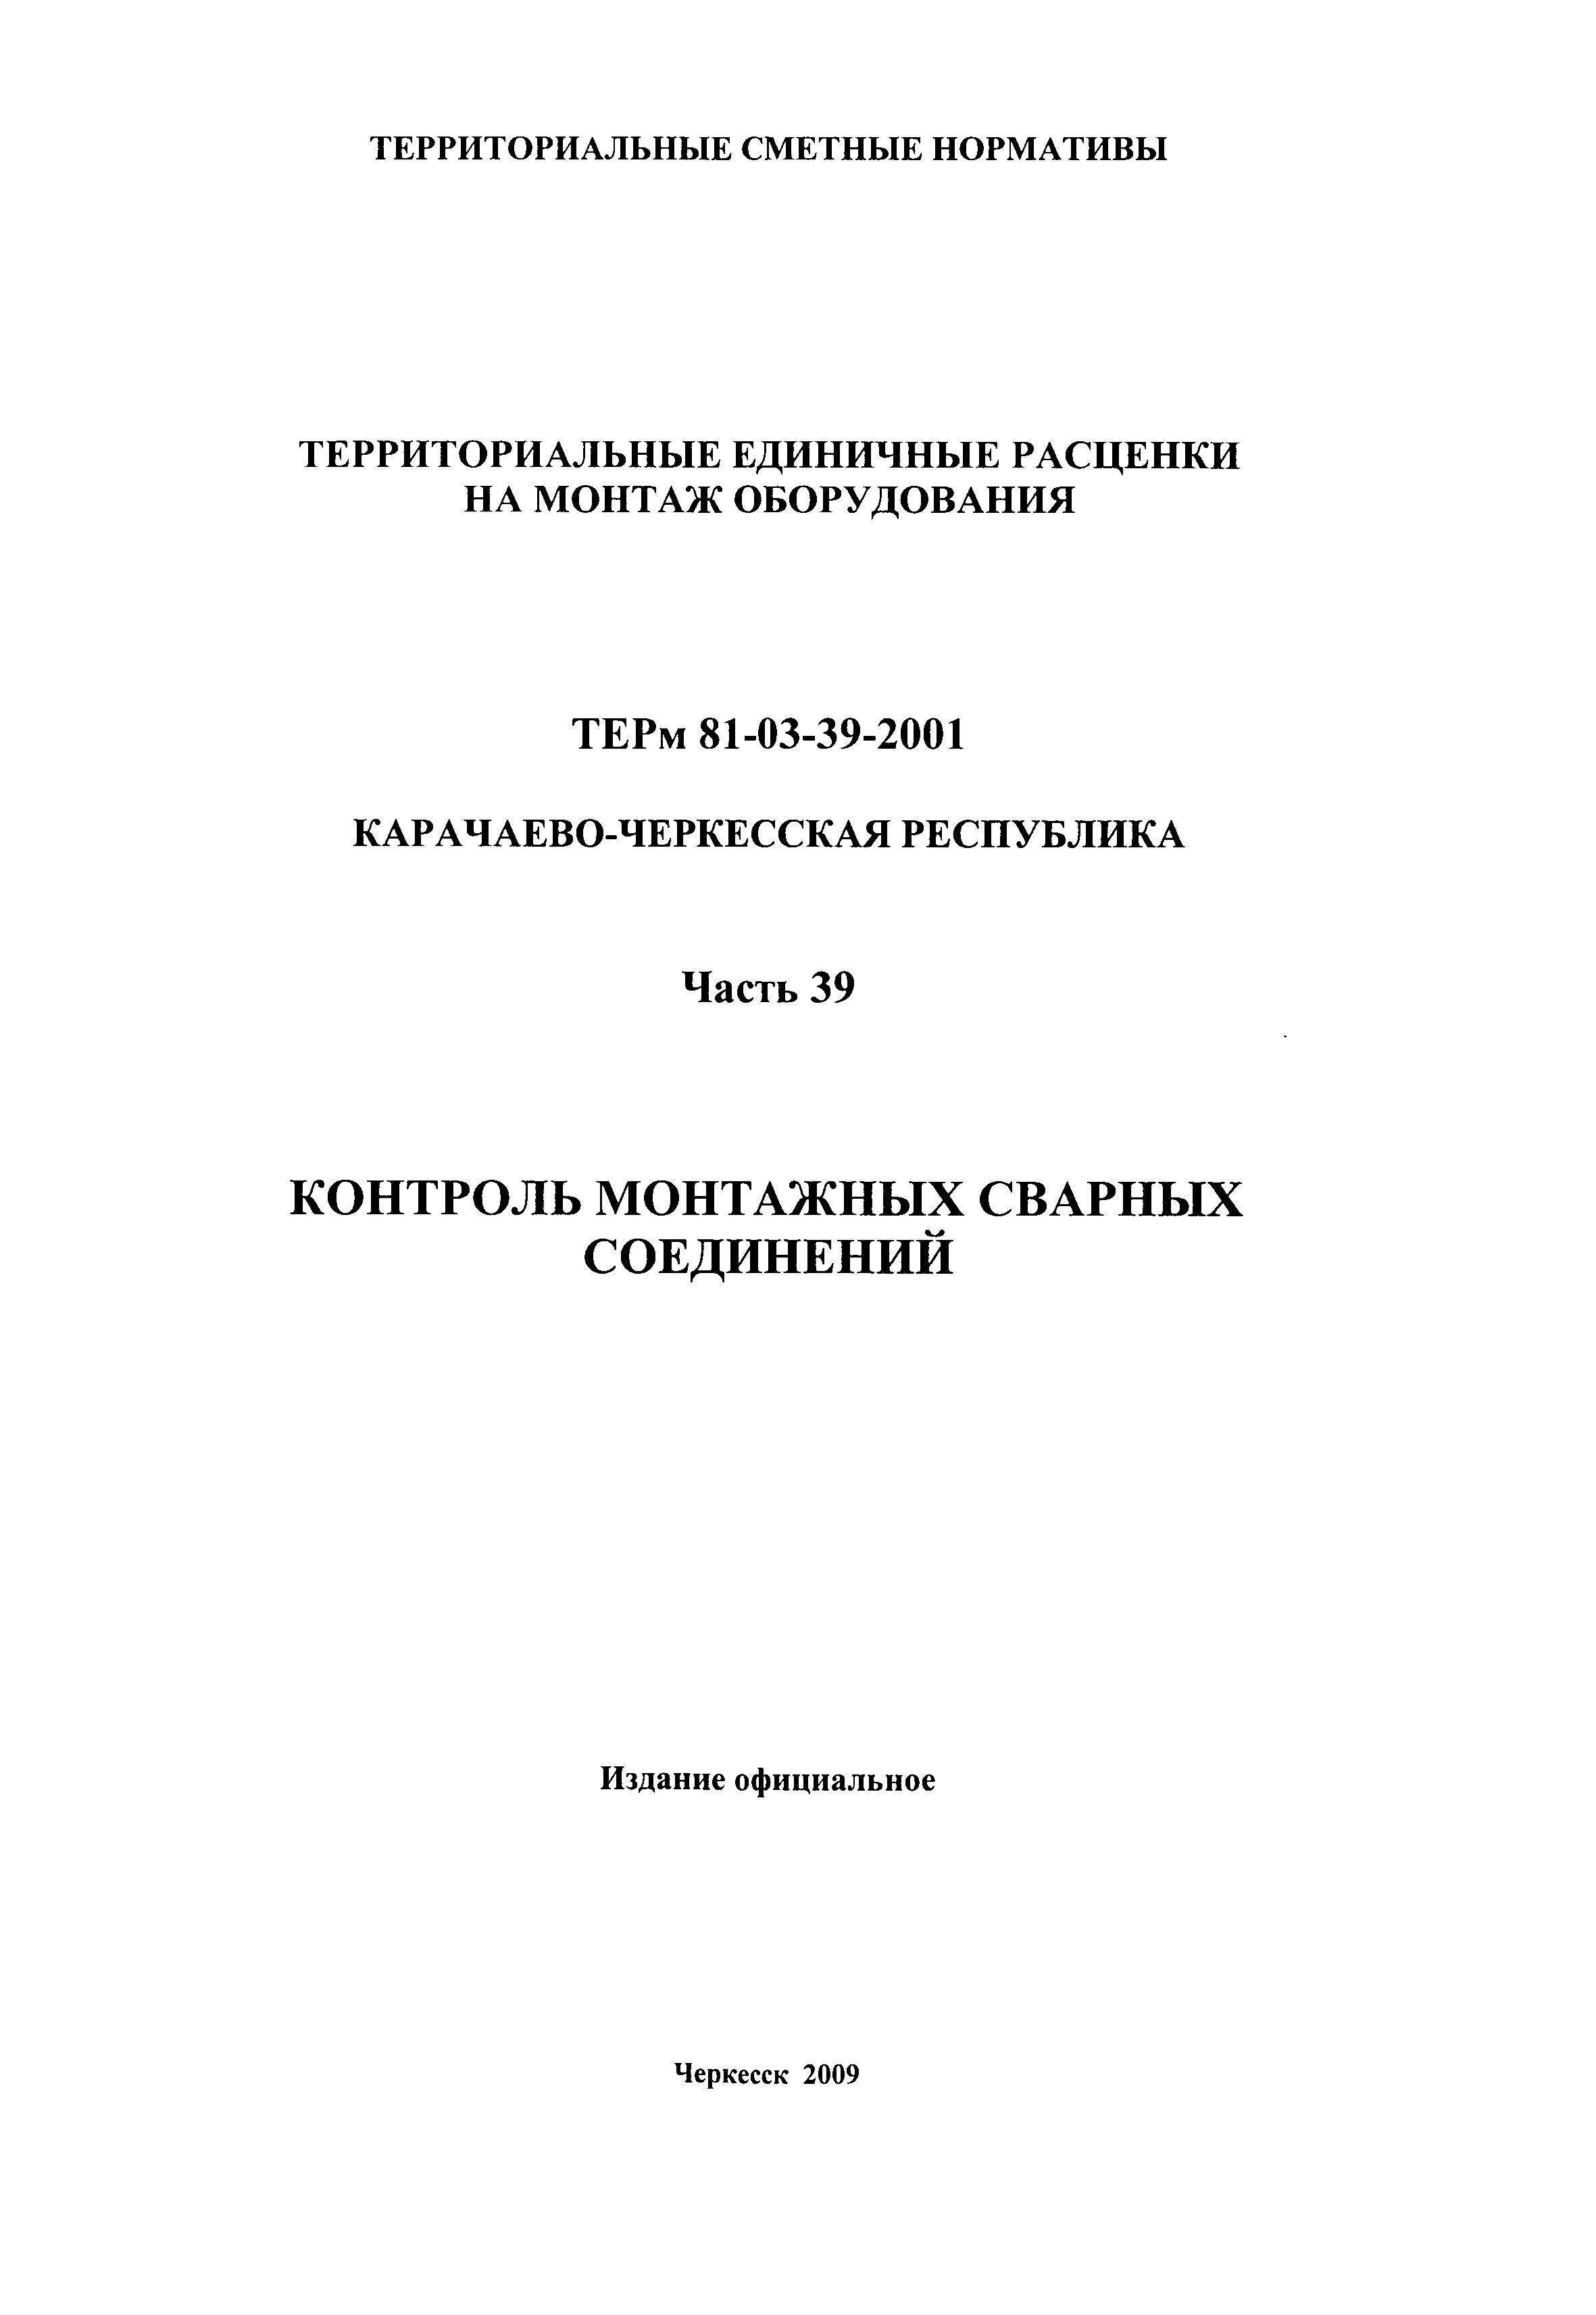 ТЕРм Карачаево-Черкесская Республика 39-2001